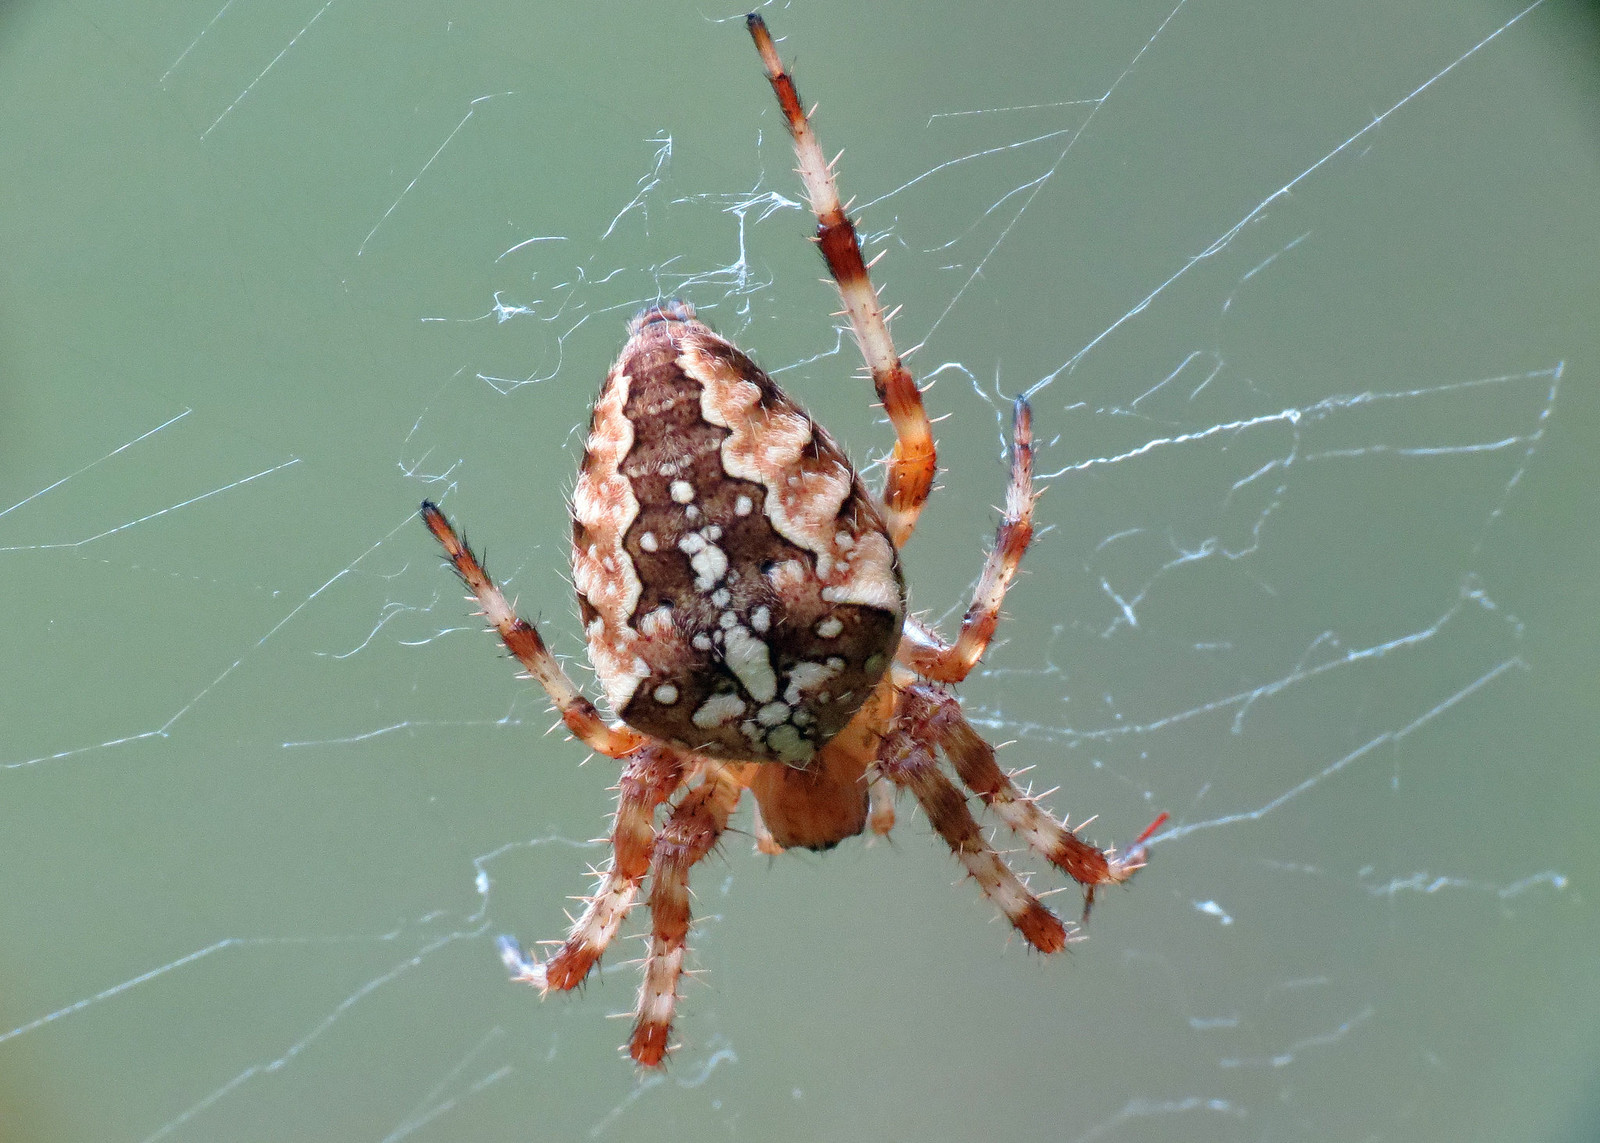 Garden Spider - Araneus diadematus